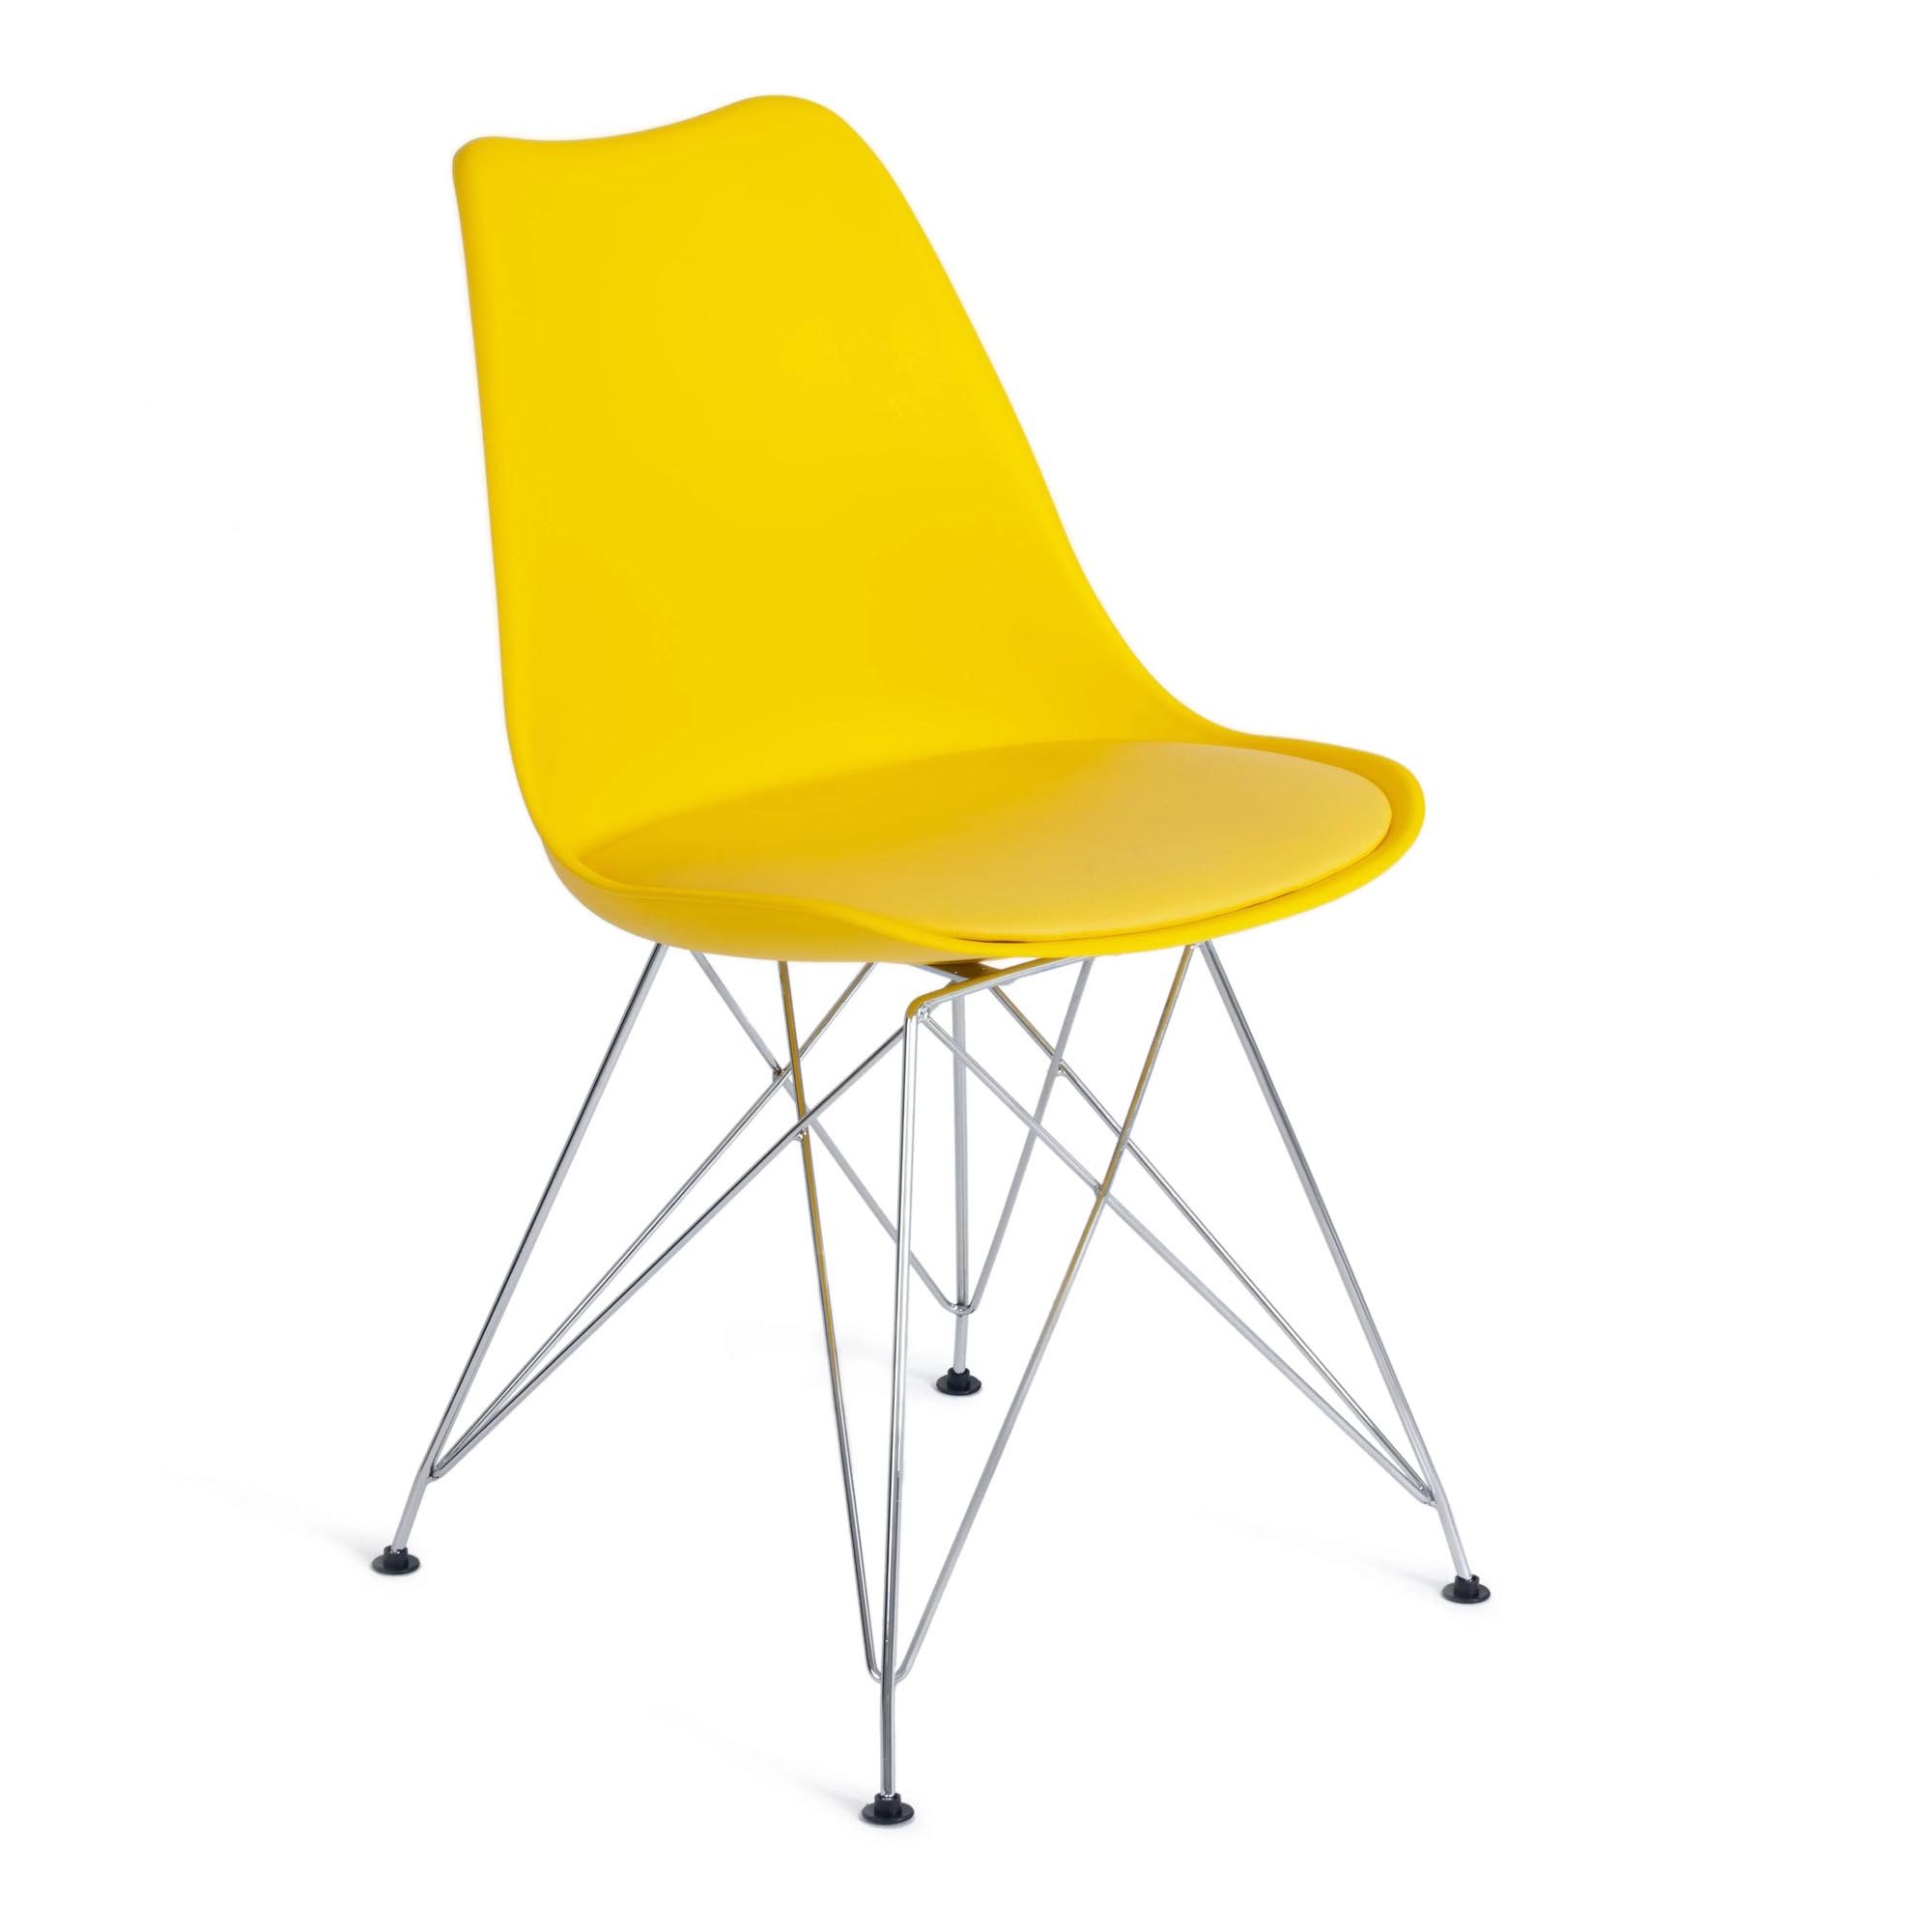 Стул TC Tulip Iron Chair 54,5x48x83,5 см желтый стул cat chair mod 028 чёрный пластик